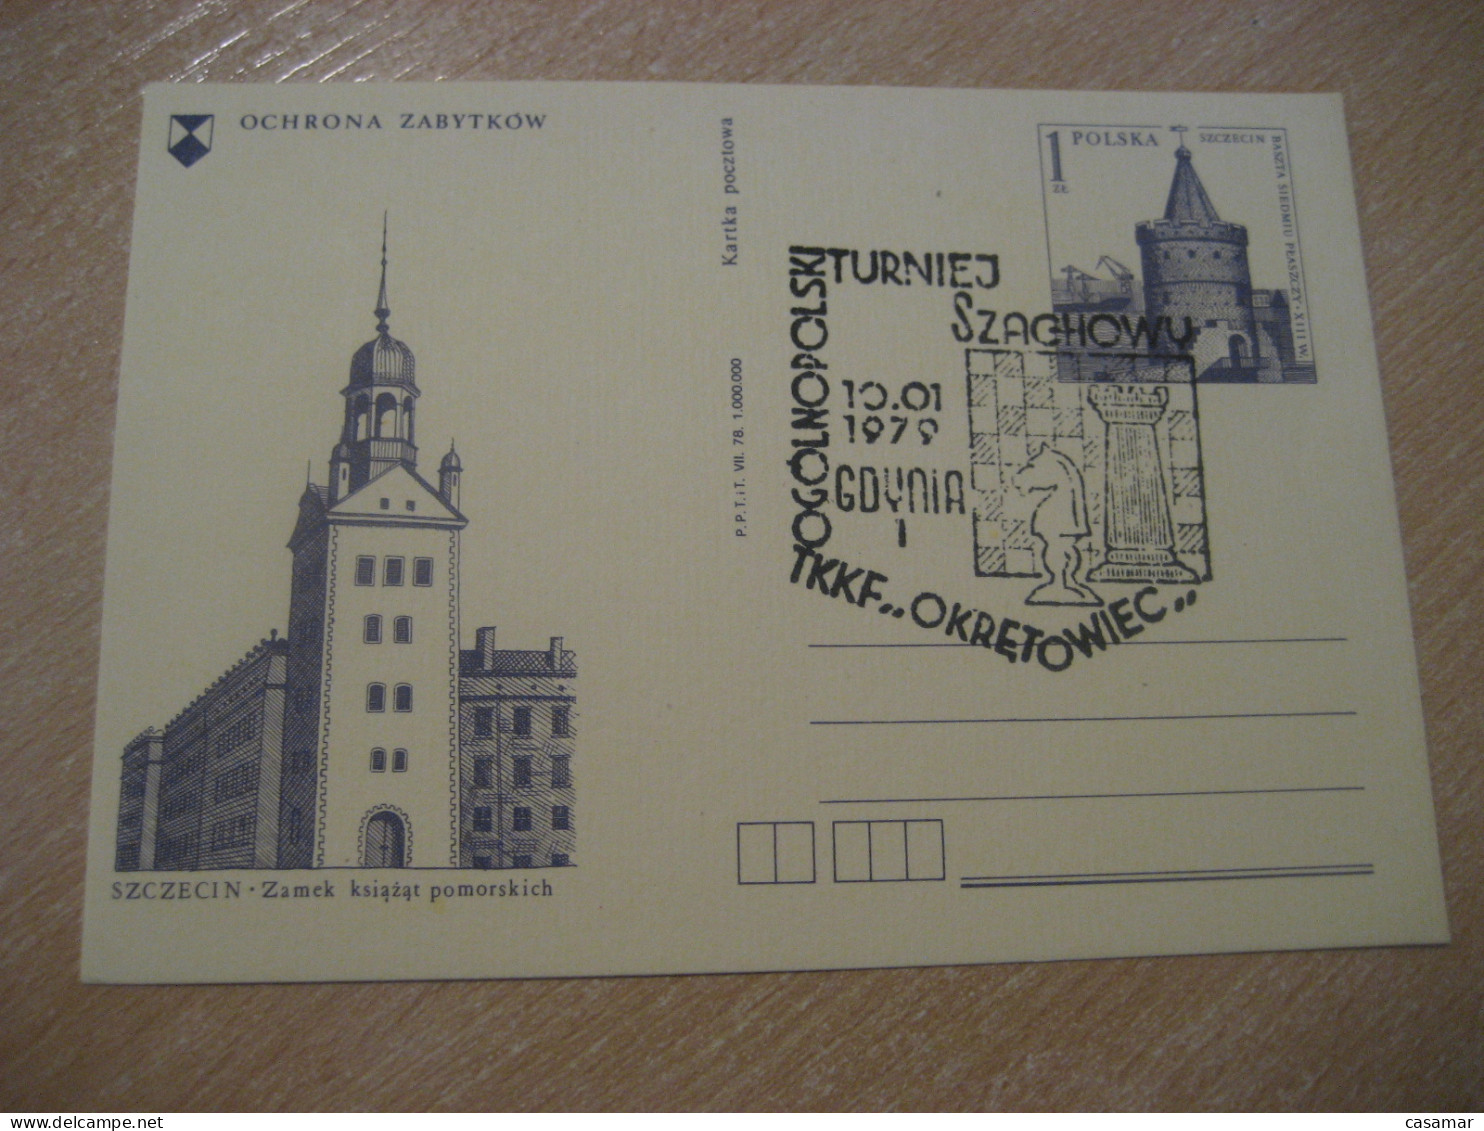 GDYNIA 1979 Chess Echecs Ajedrez Cancel Postal Stationery Card POLAND - Echecs